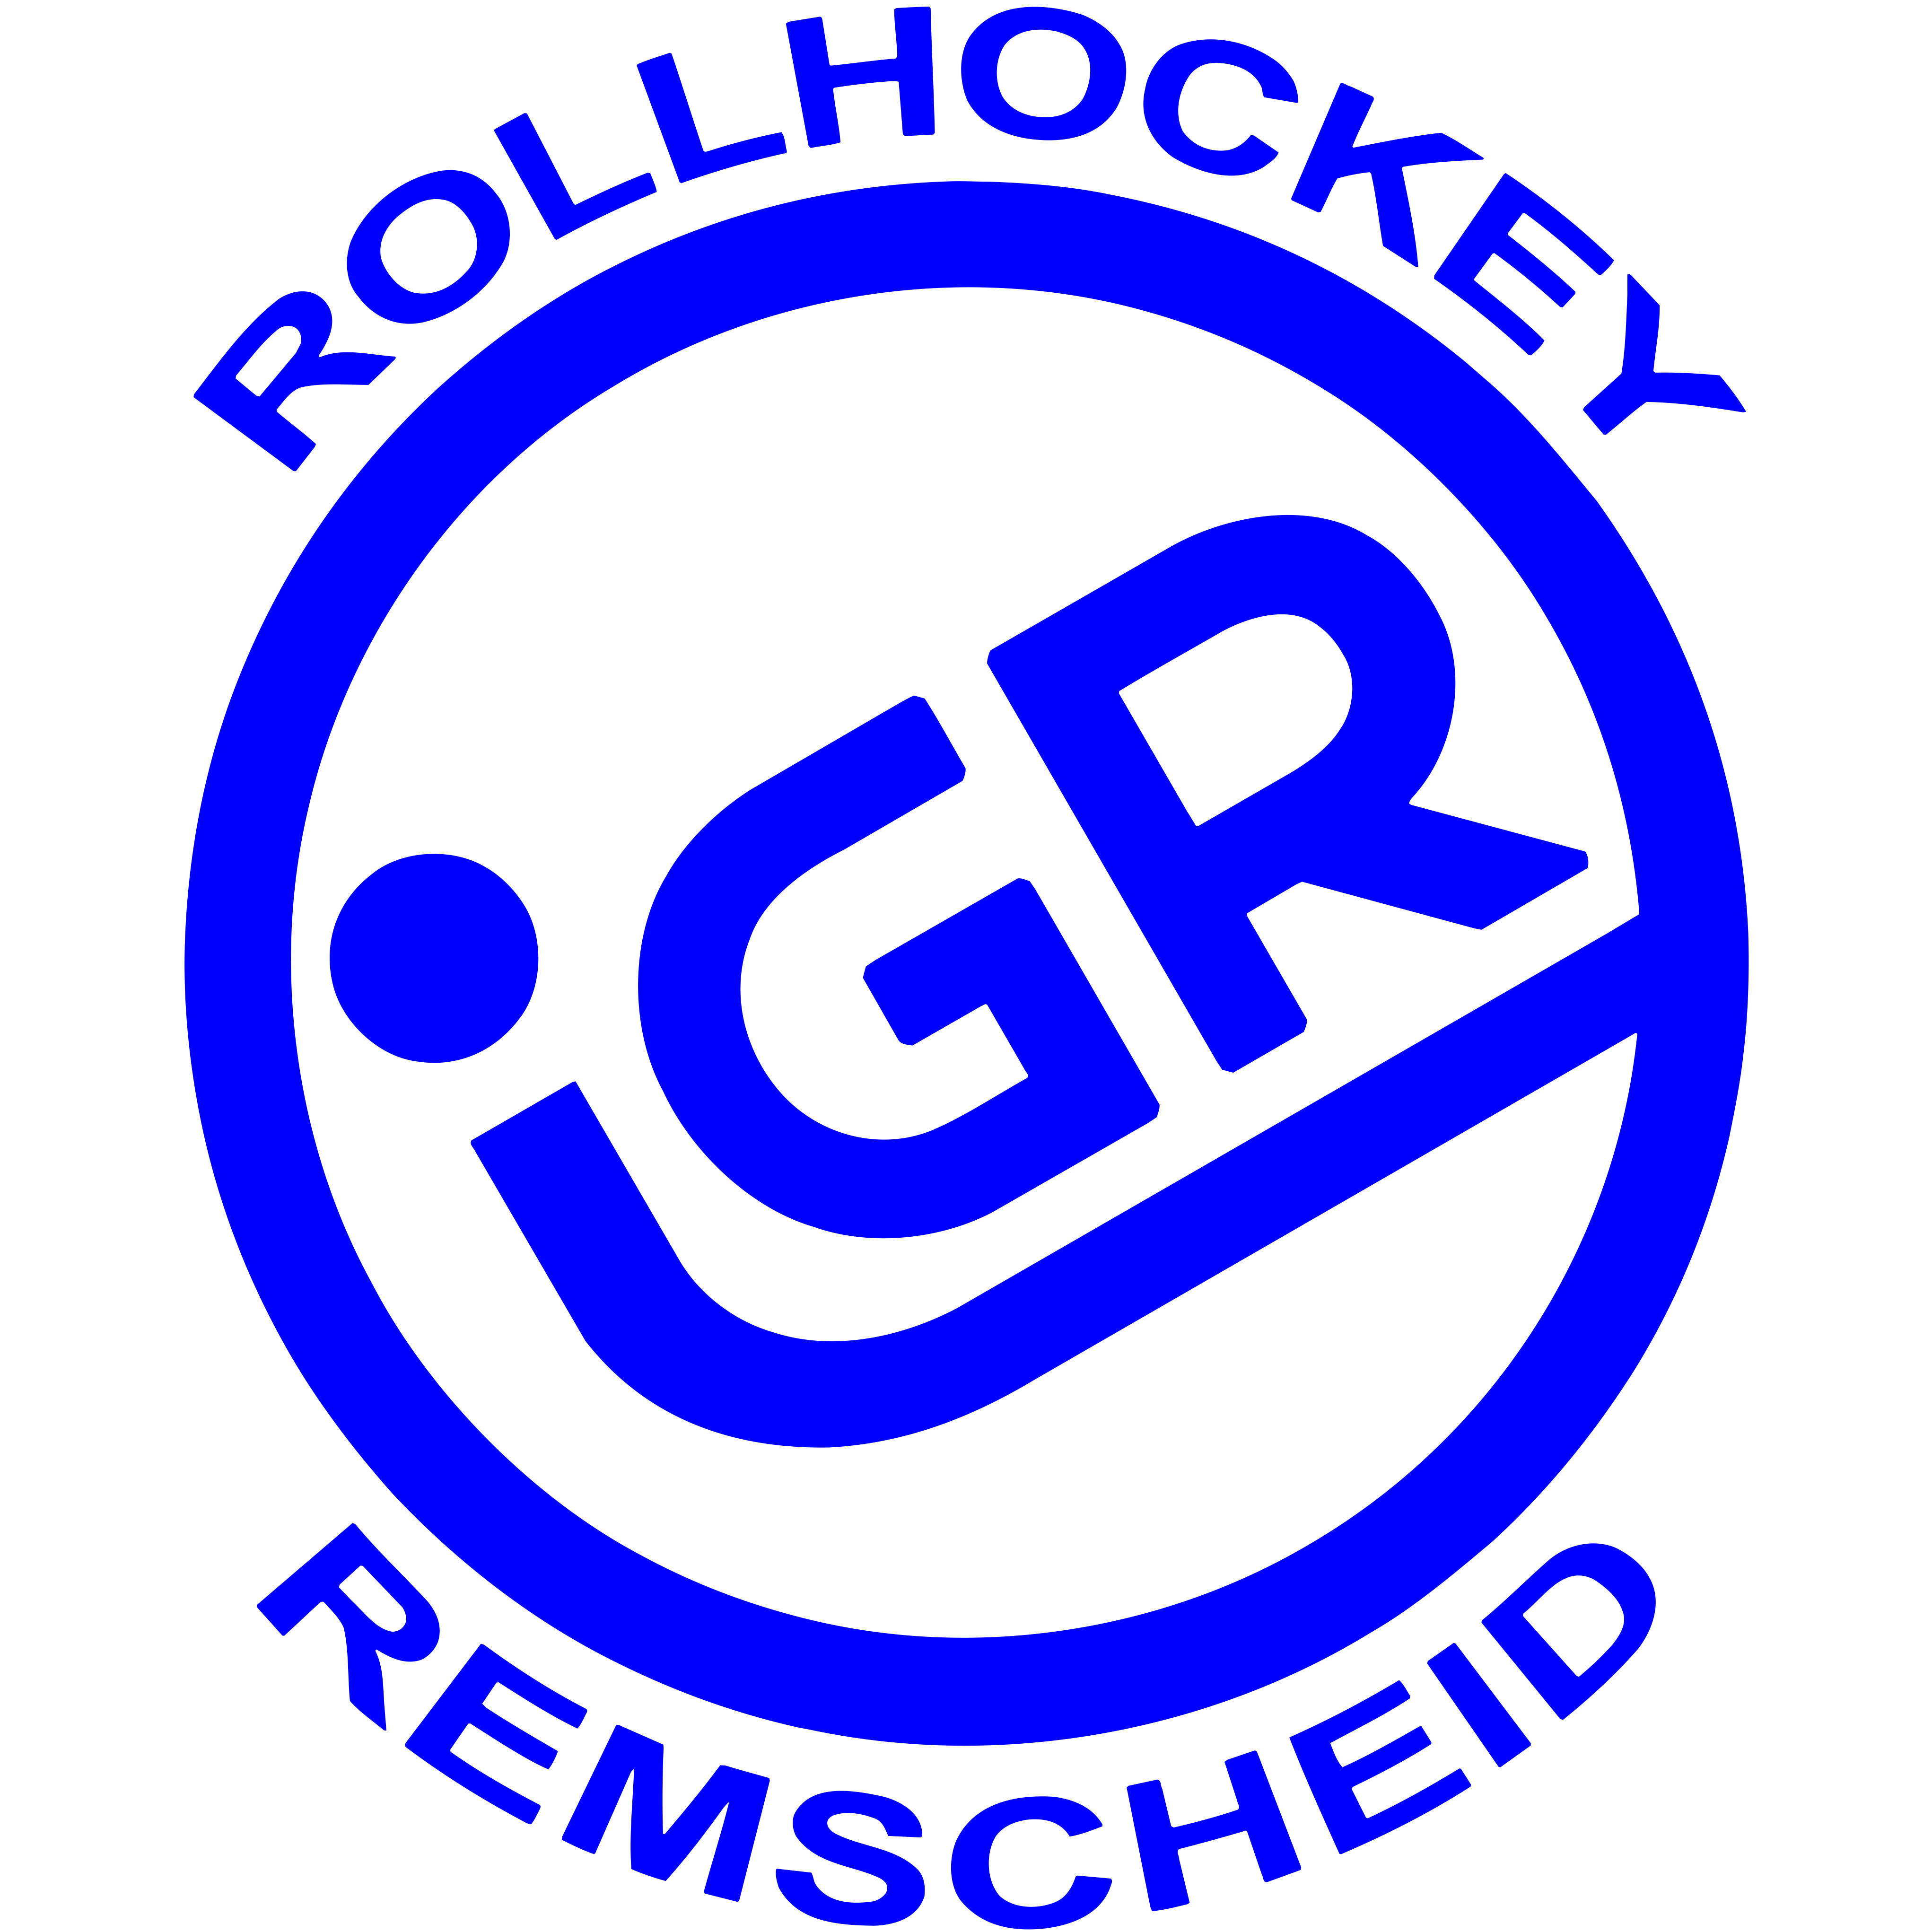 2009 Gründung des Rollsportverein IGR Remscheid e.V.